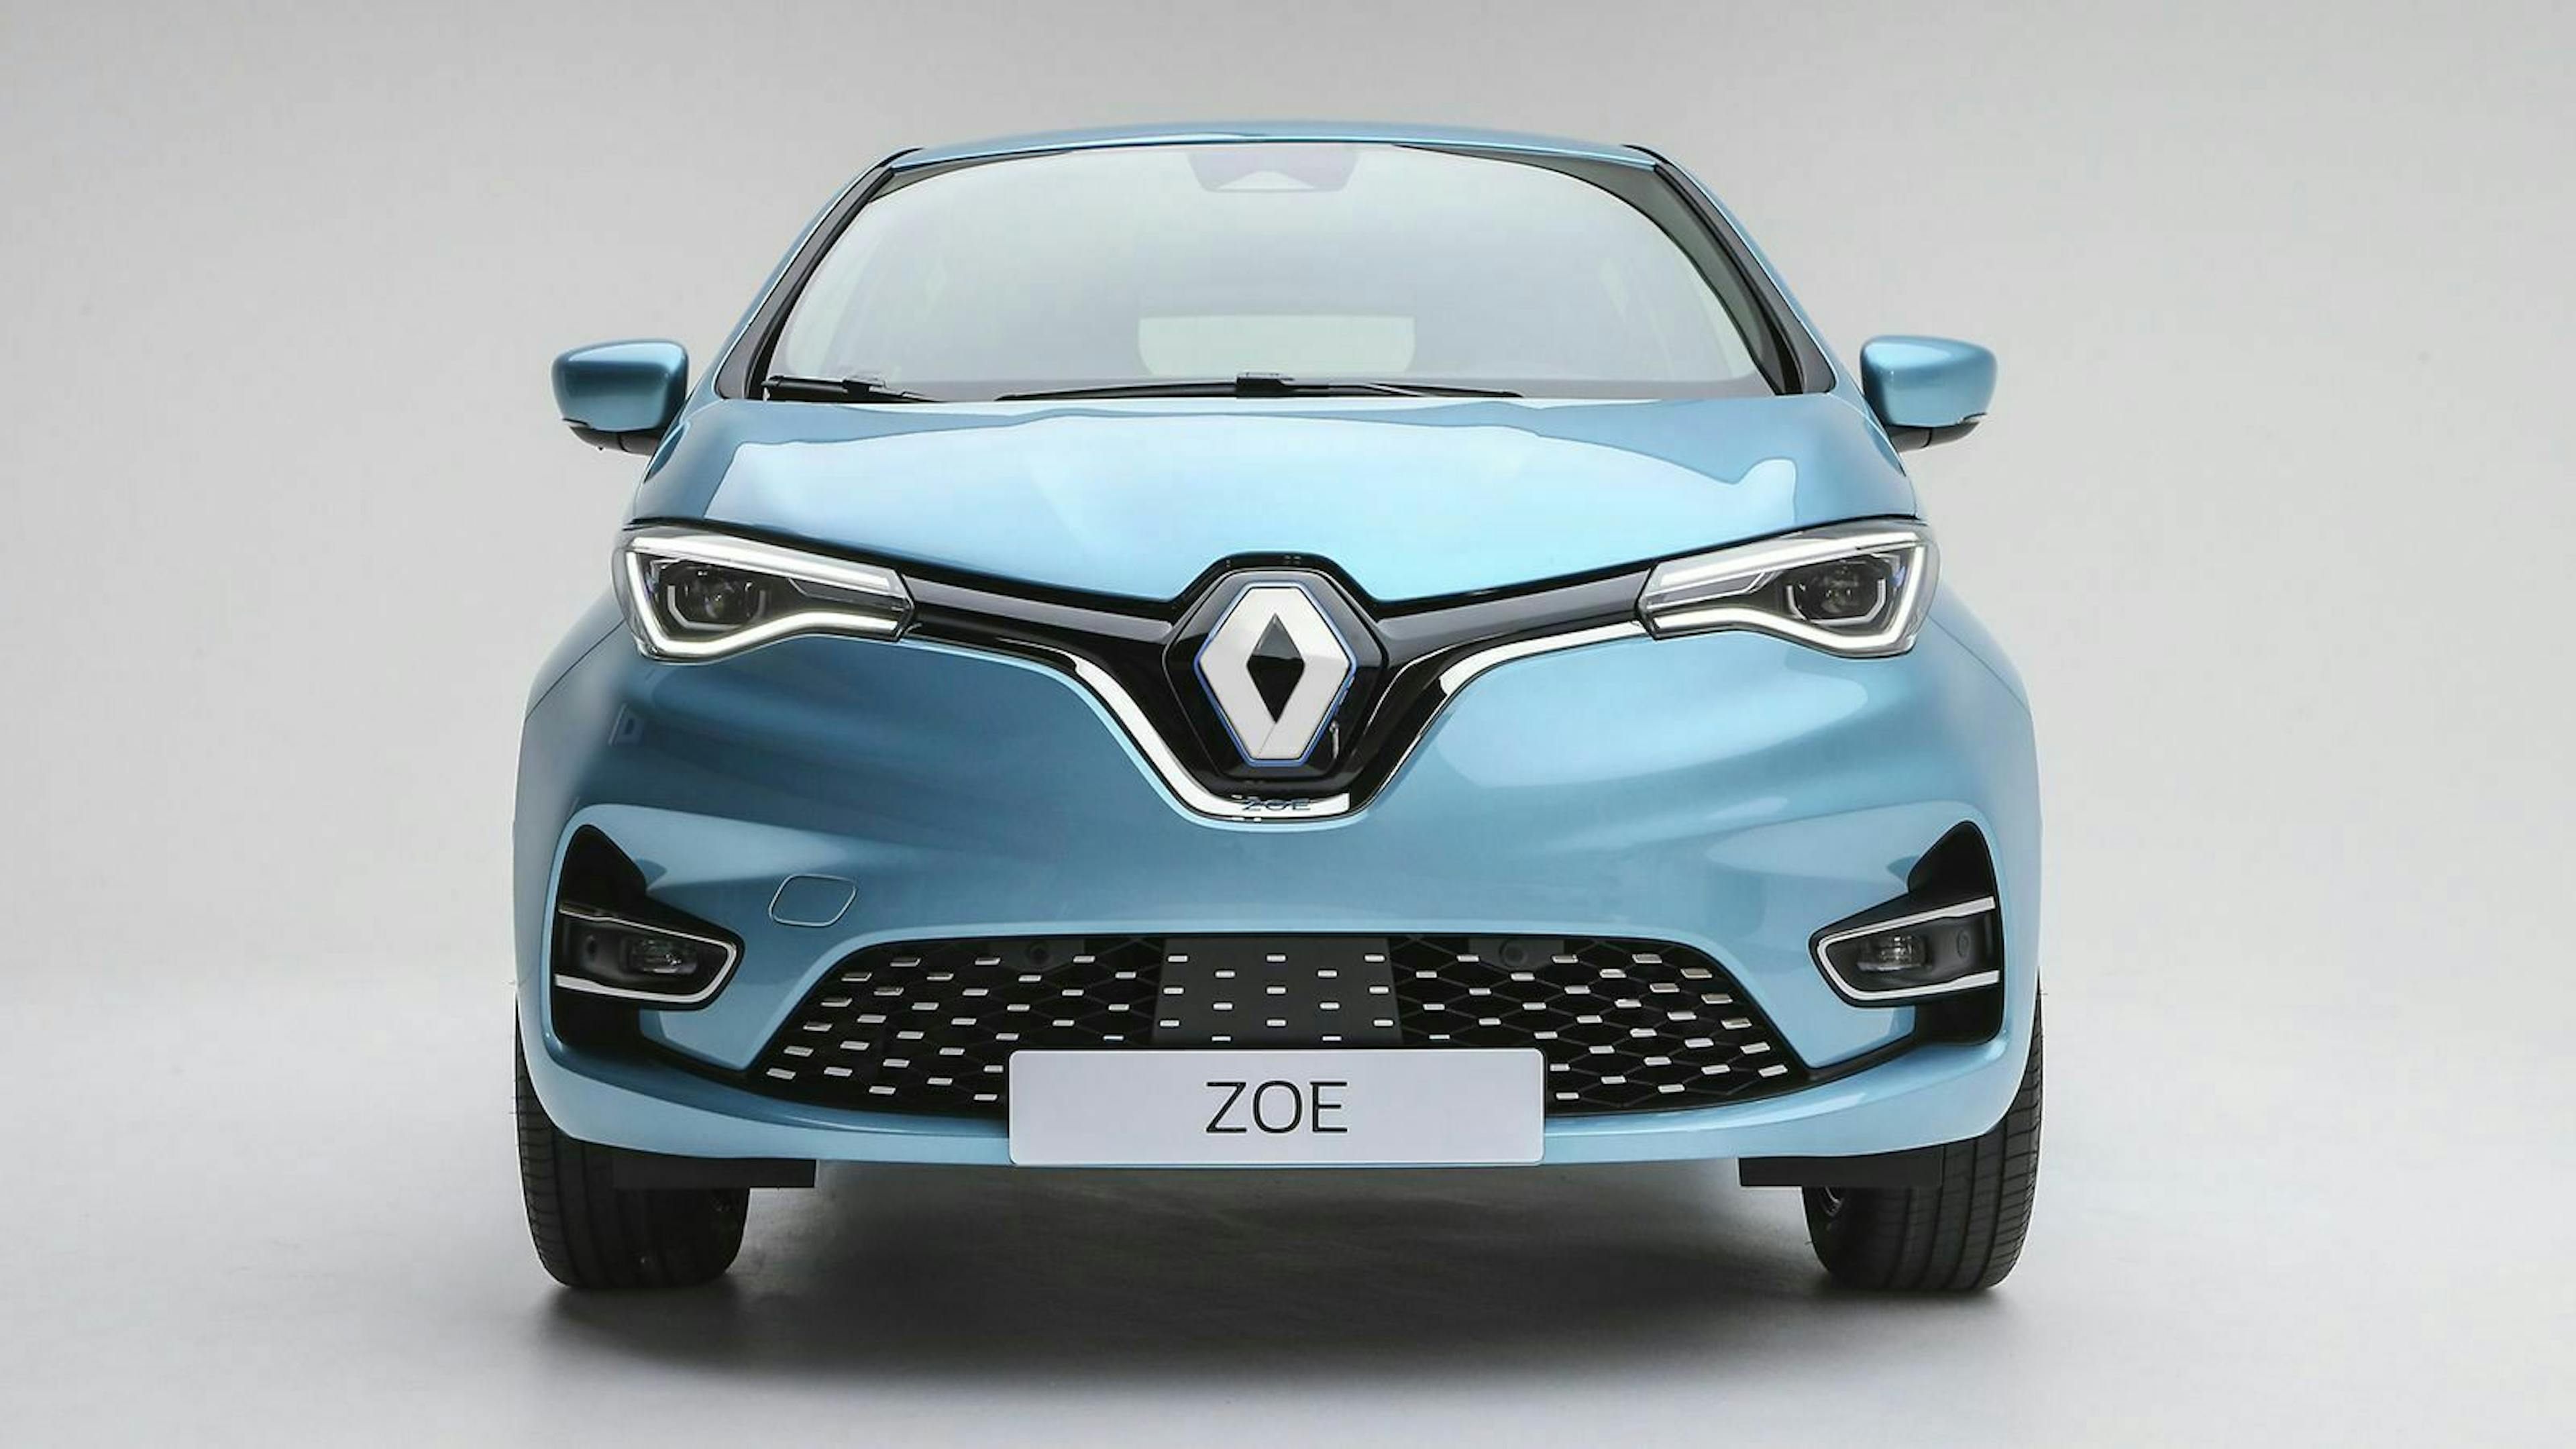 Den vorherigen Einstiegsakku mit 22 kWh nimmt Renault mit dem Facelift aus dem Programm